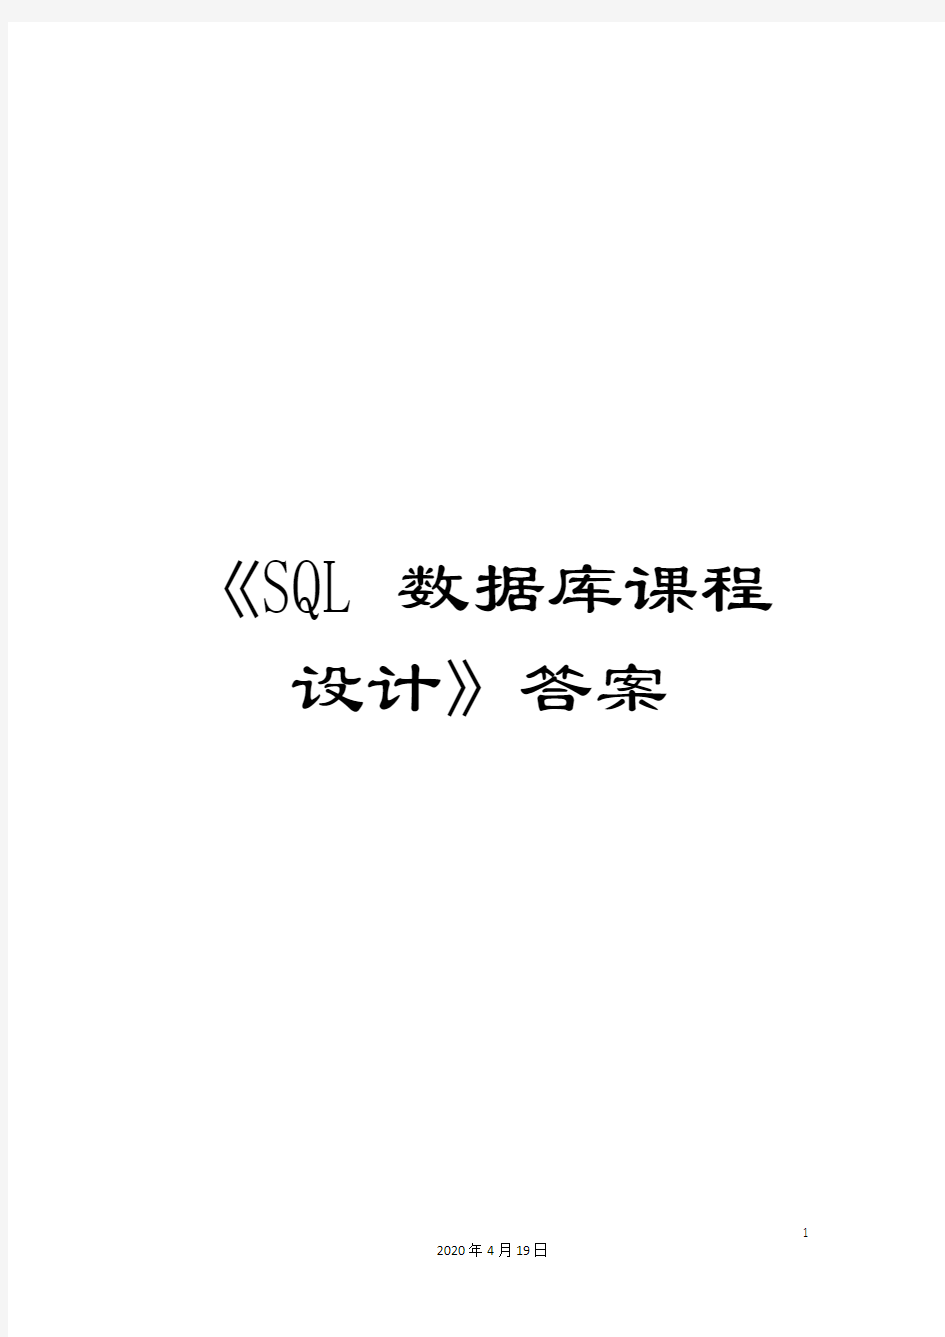 《SQL数据库课程设计》答案